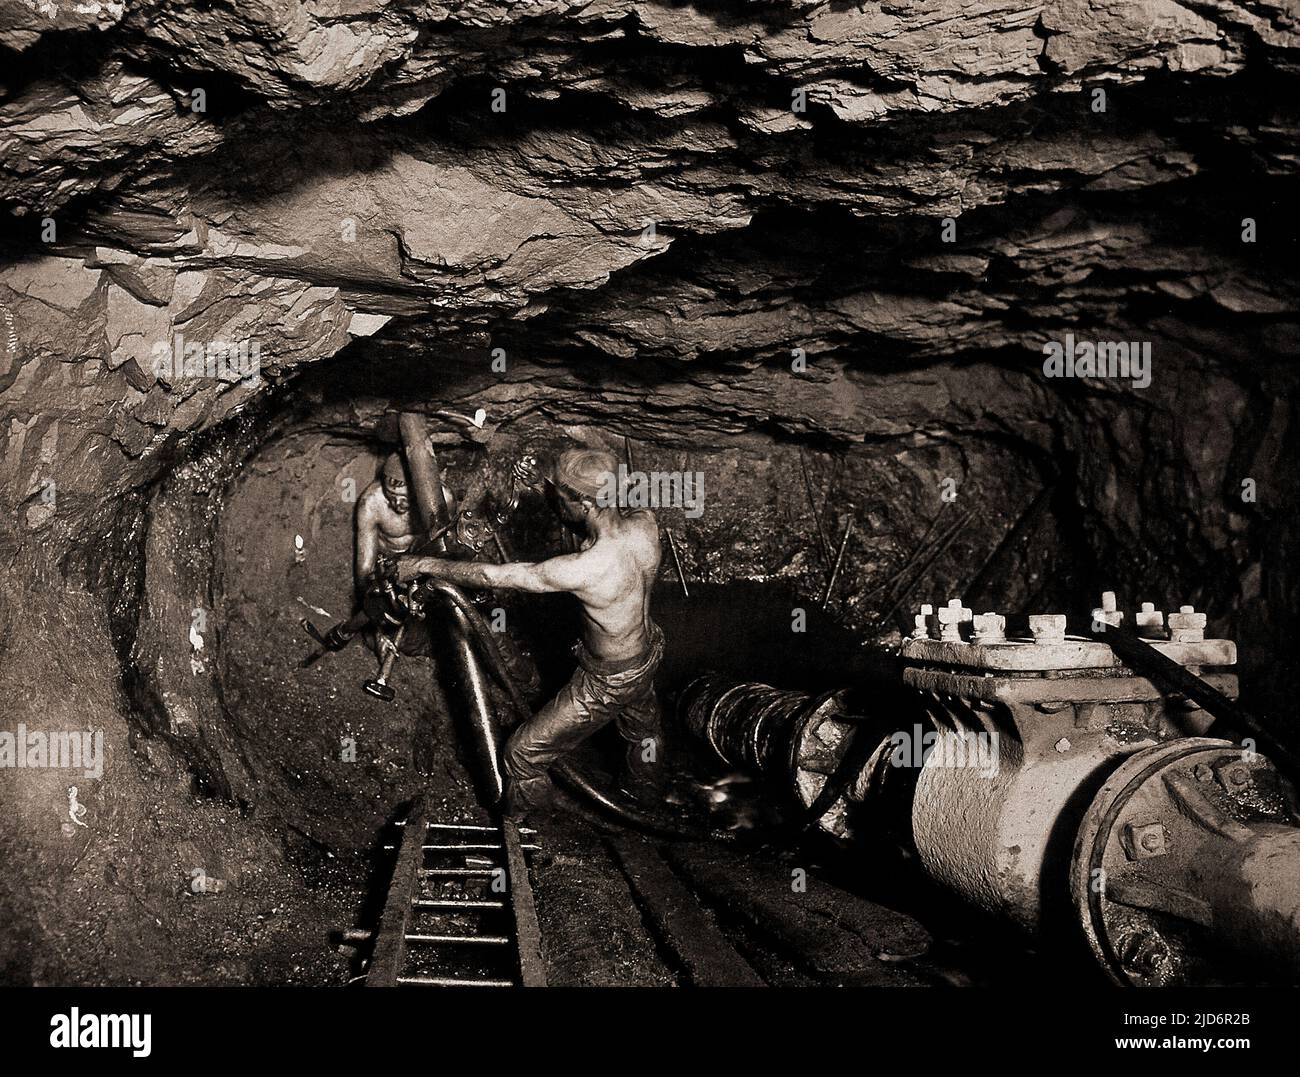 Minería de estaño en la mina Tincroft, Carn Brea, una mina de Cornualles en 1910, fotografía de J.C. Burrow, observe las velas pegadas a la pared para la iluminación Foto de stock